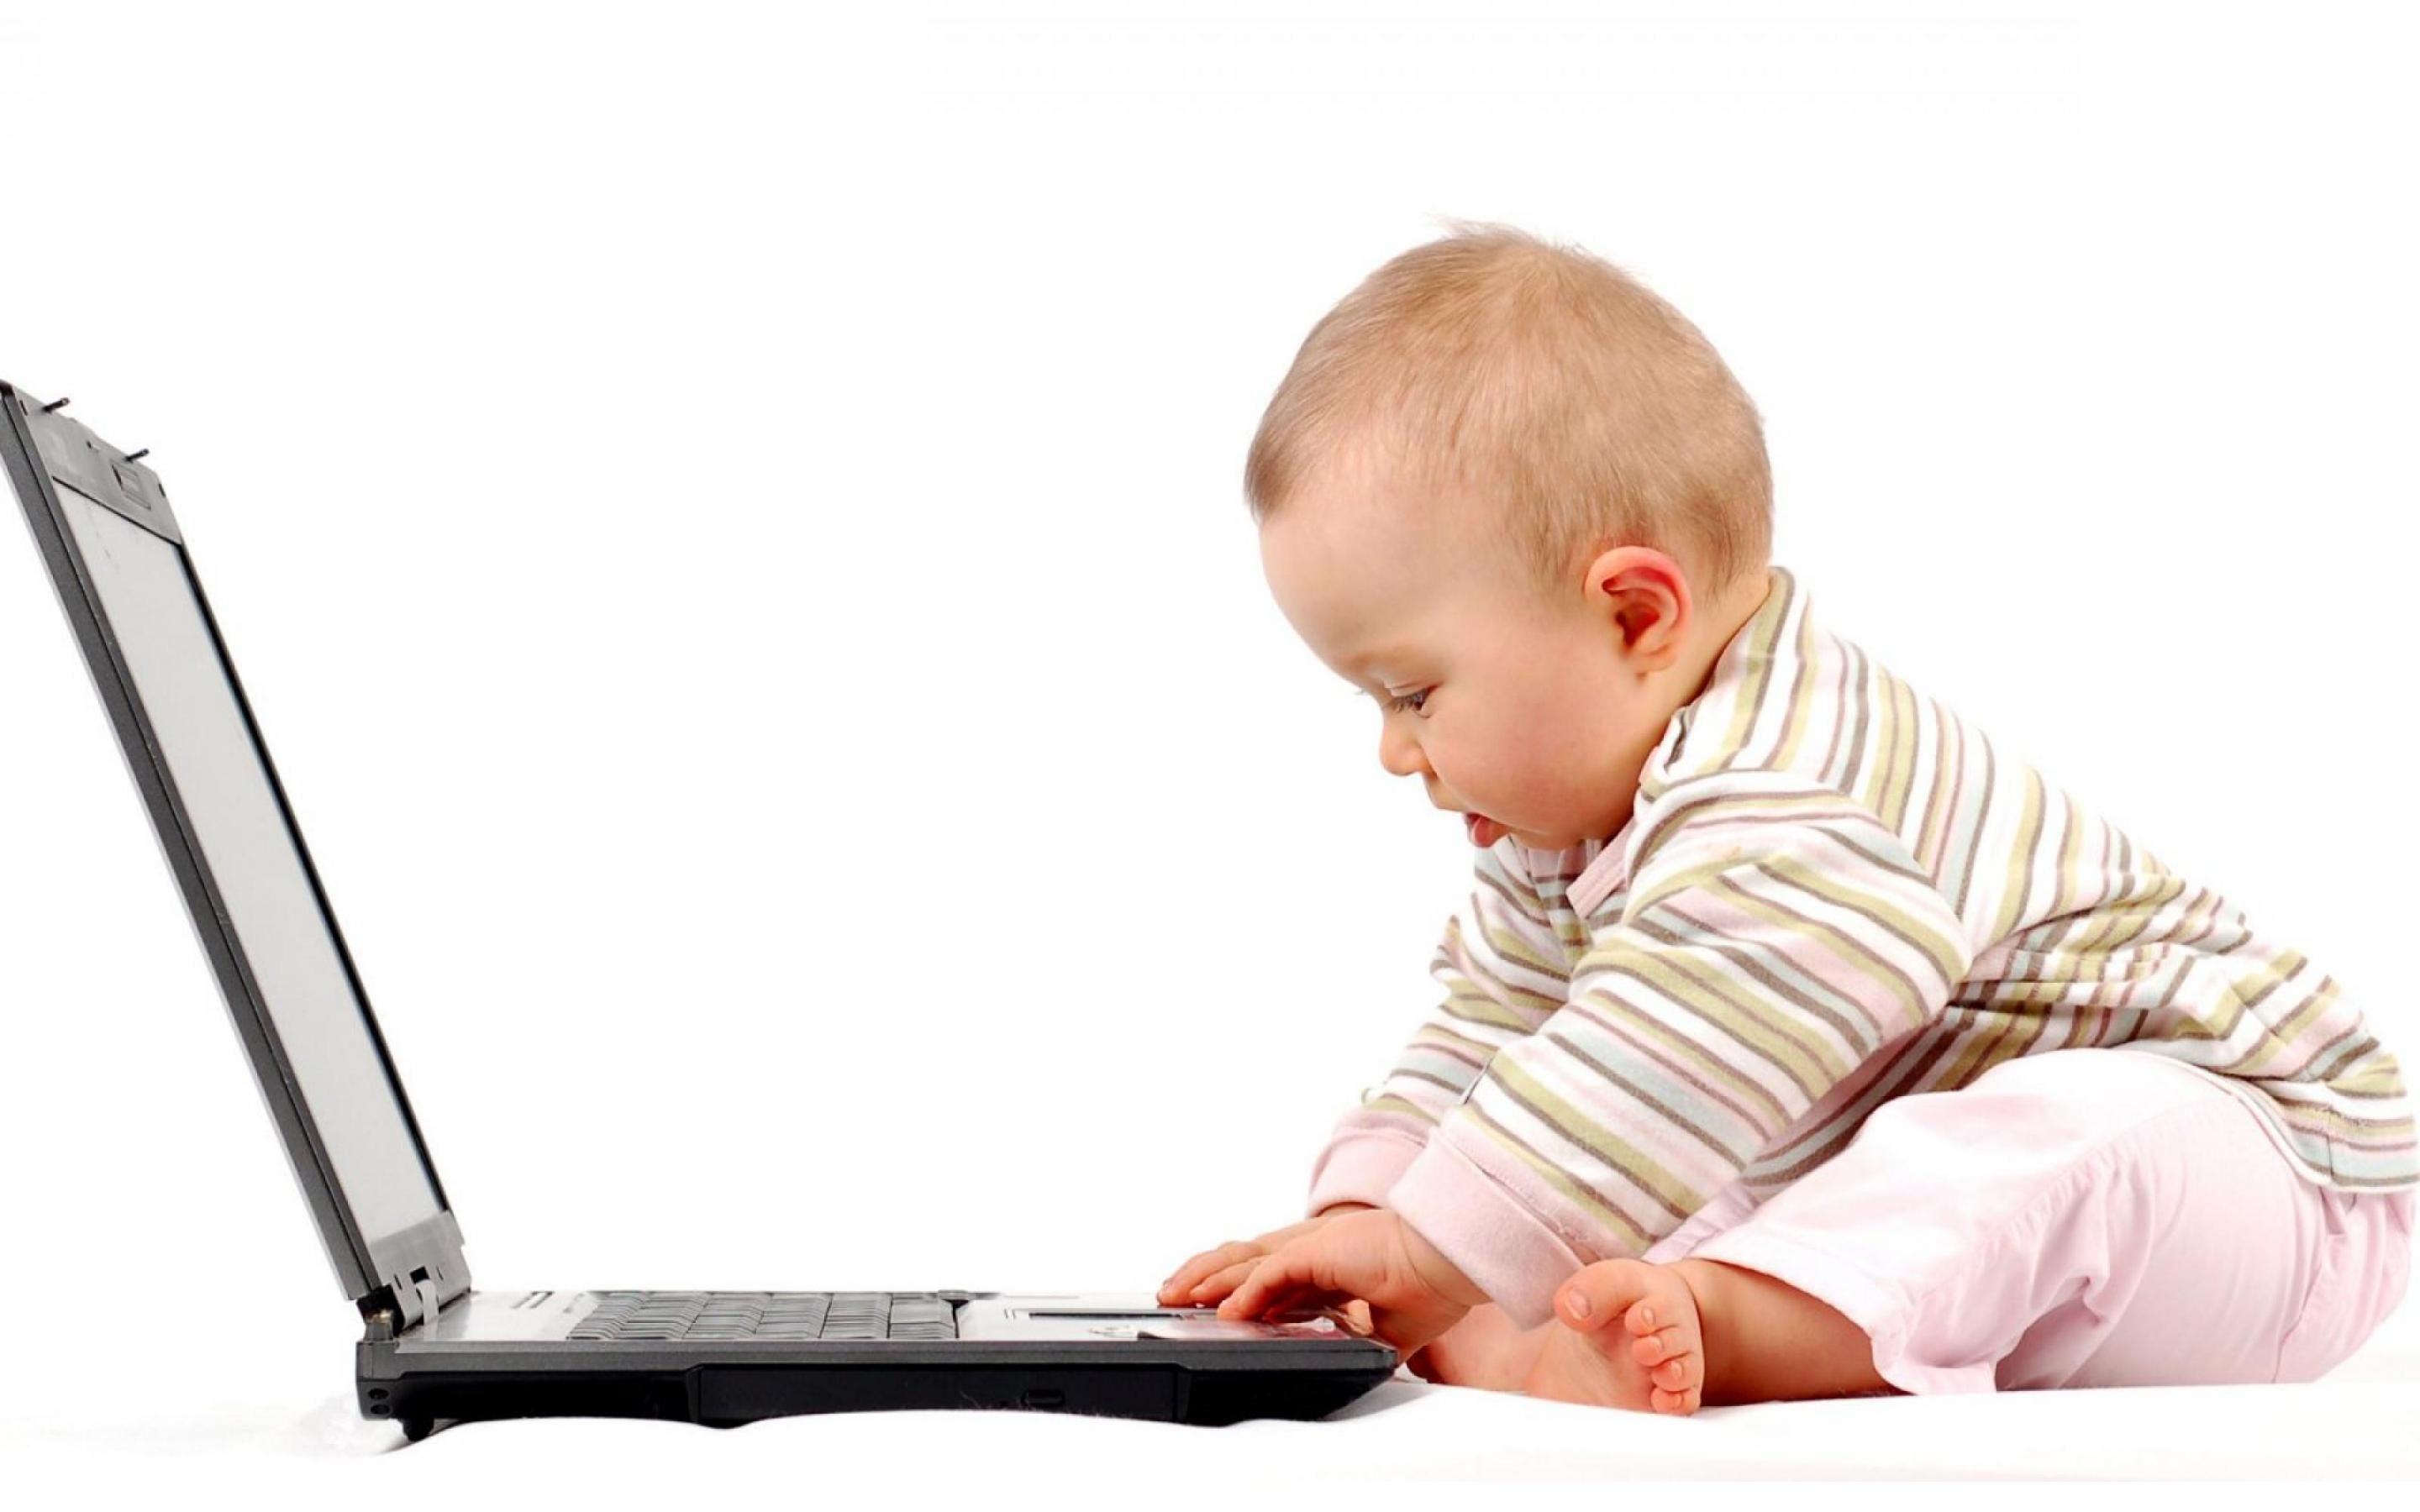 Интернет в жизни детей. Реклама работы в интернете. Компьютер для детей. Удаленная работа в интернете.